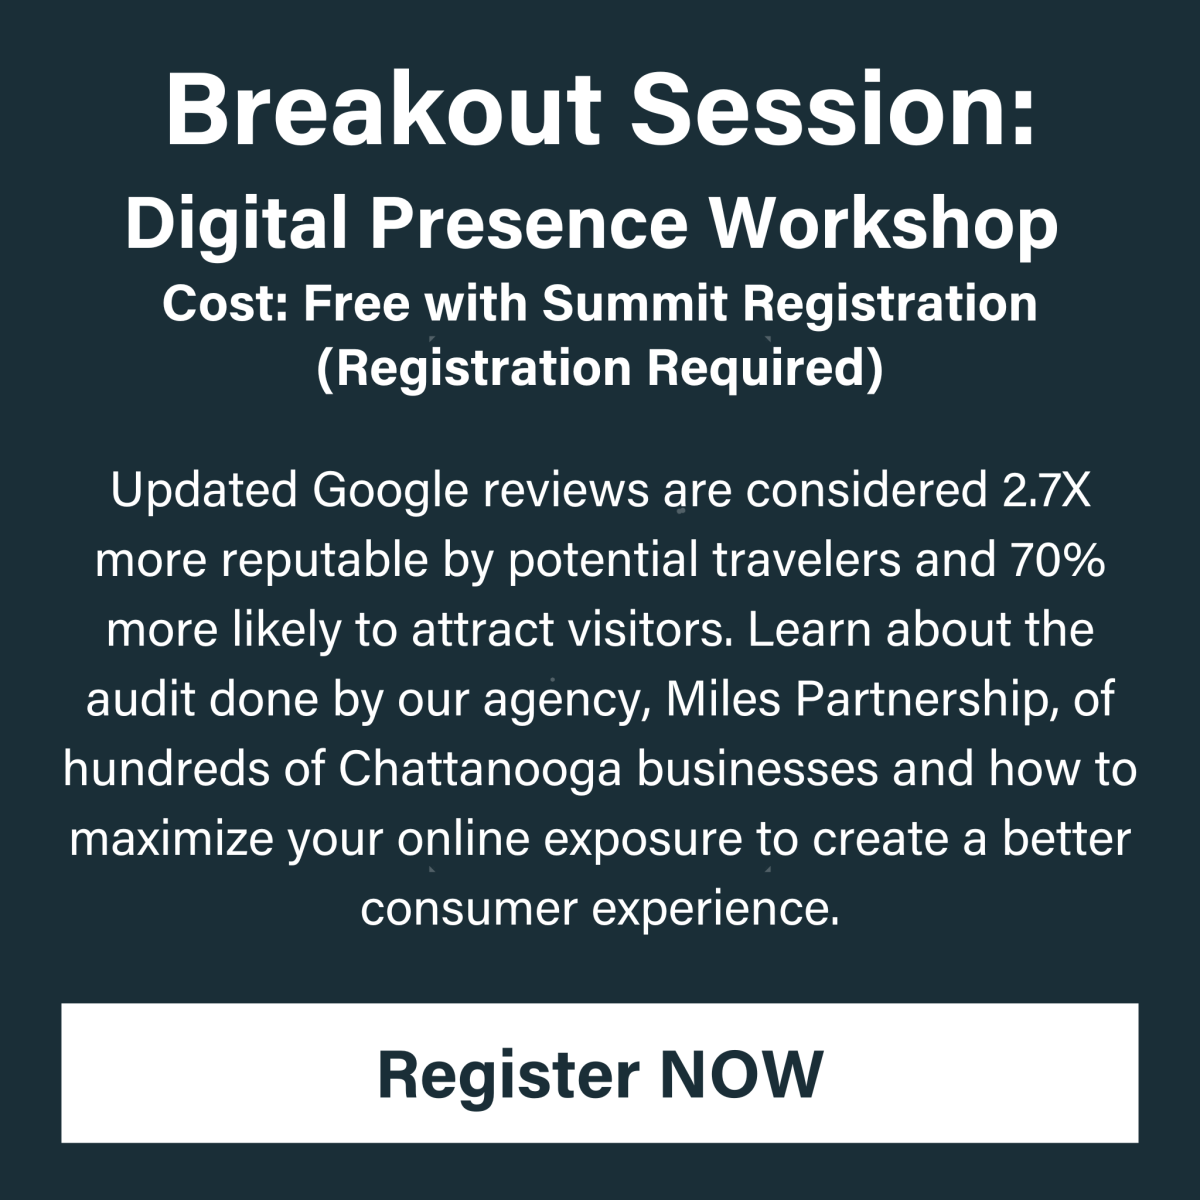 Digital Presence Workshop Breakout Session